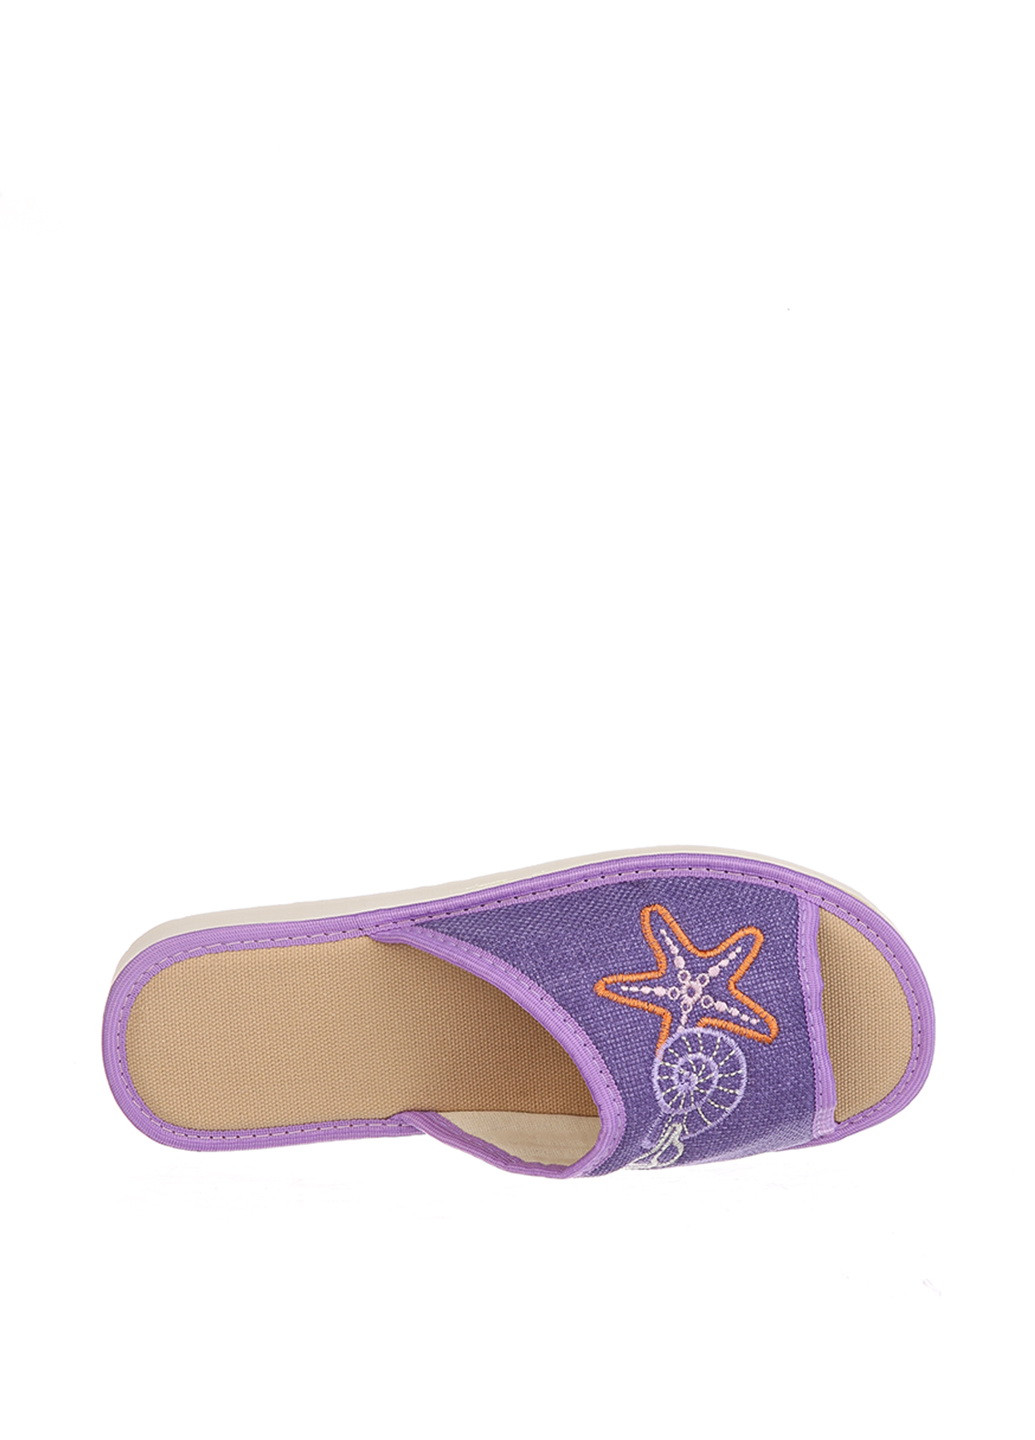 Фиолетовые тапочки ELIO с вышивкой, с белой подошвой